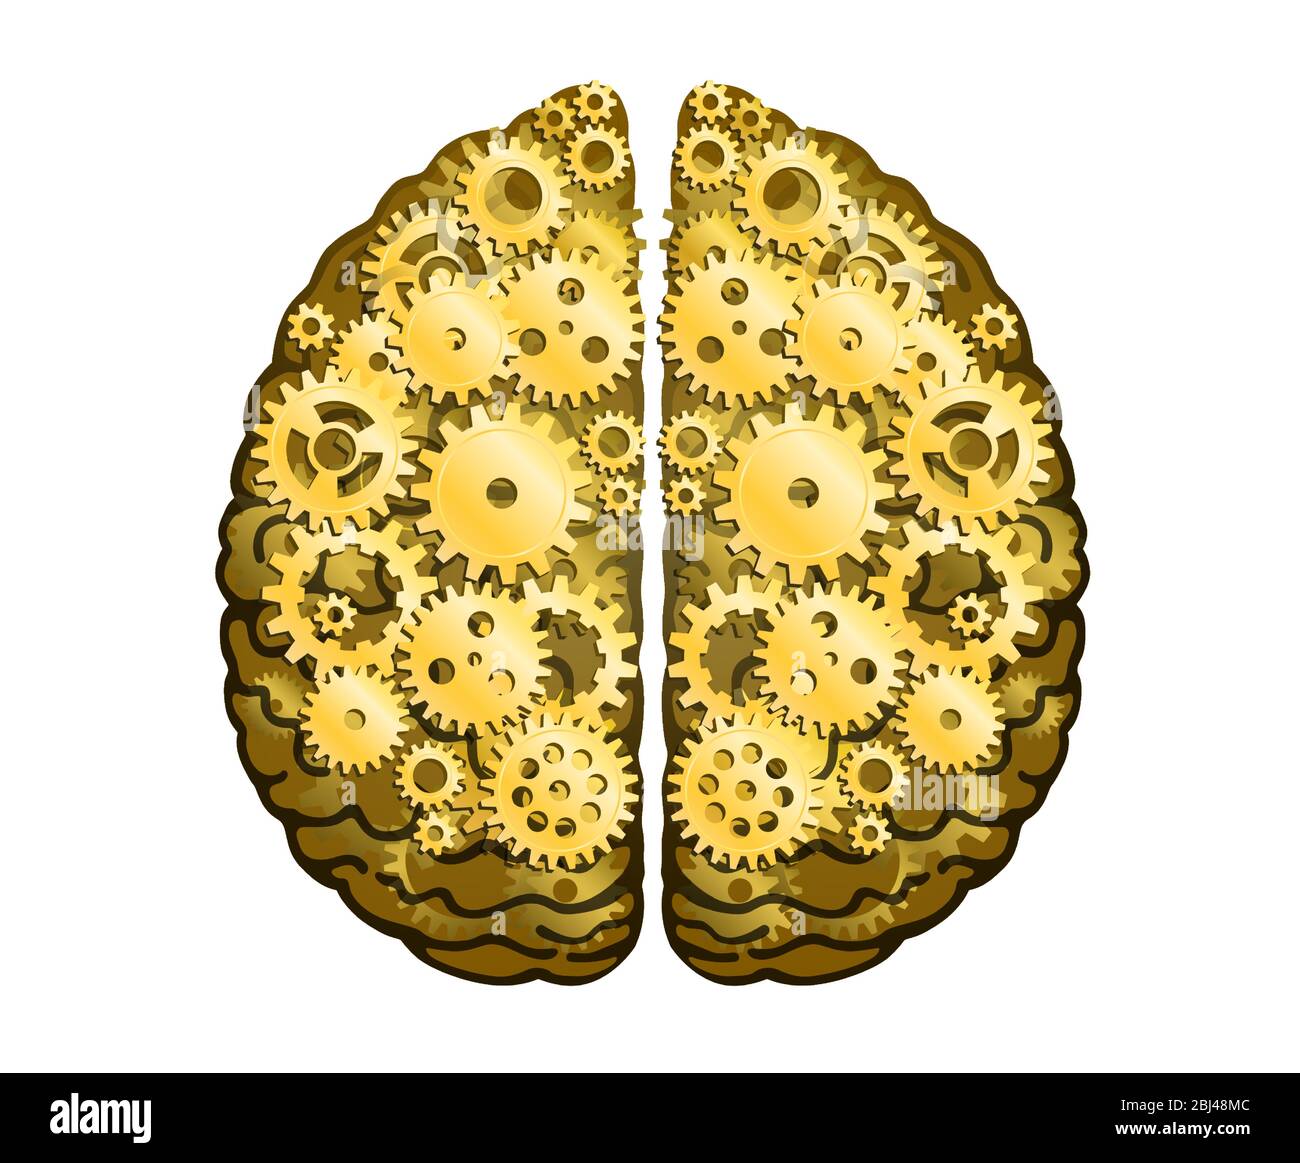 Cervello umano meccanico vettoriale. Emisferi cerebrali, convoluzioni della mente cervello. Ruote e ingranaggi in metallo dorato, processo di pensiero e di scoperta Illustrazione Vettoriale